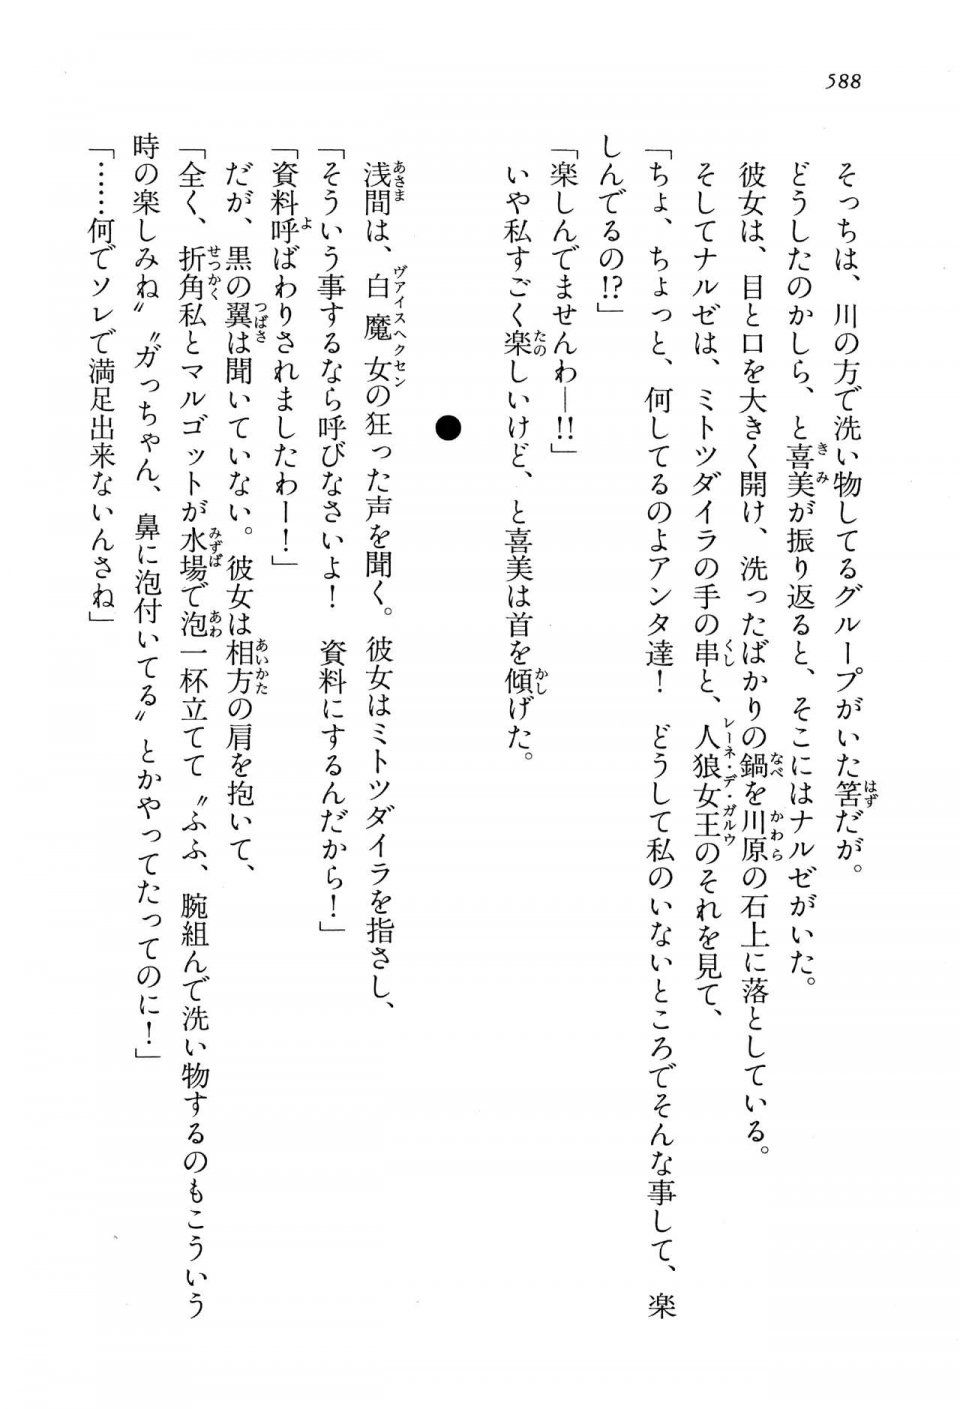 Kyoukai Senjou no Horizon LN Vol 13(6A) - Photo #588